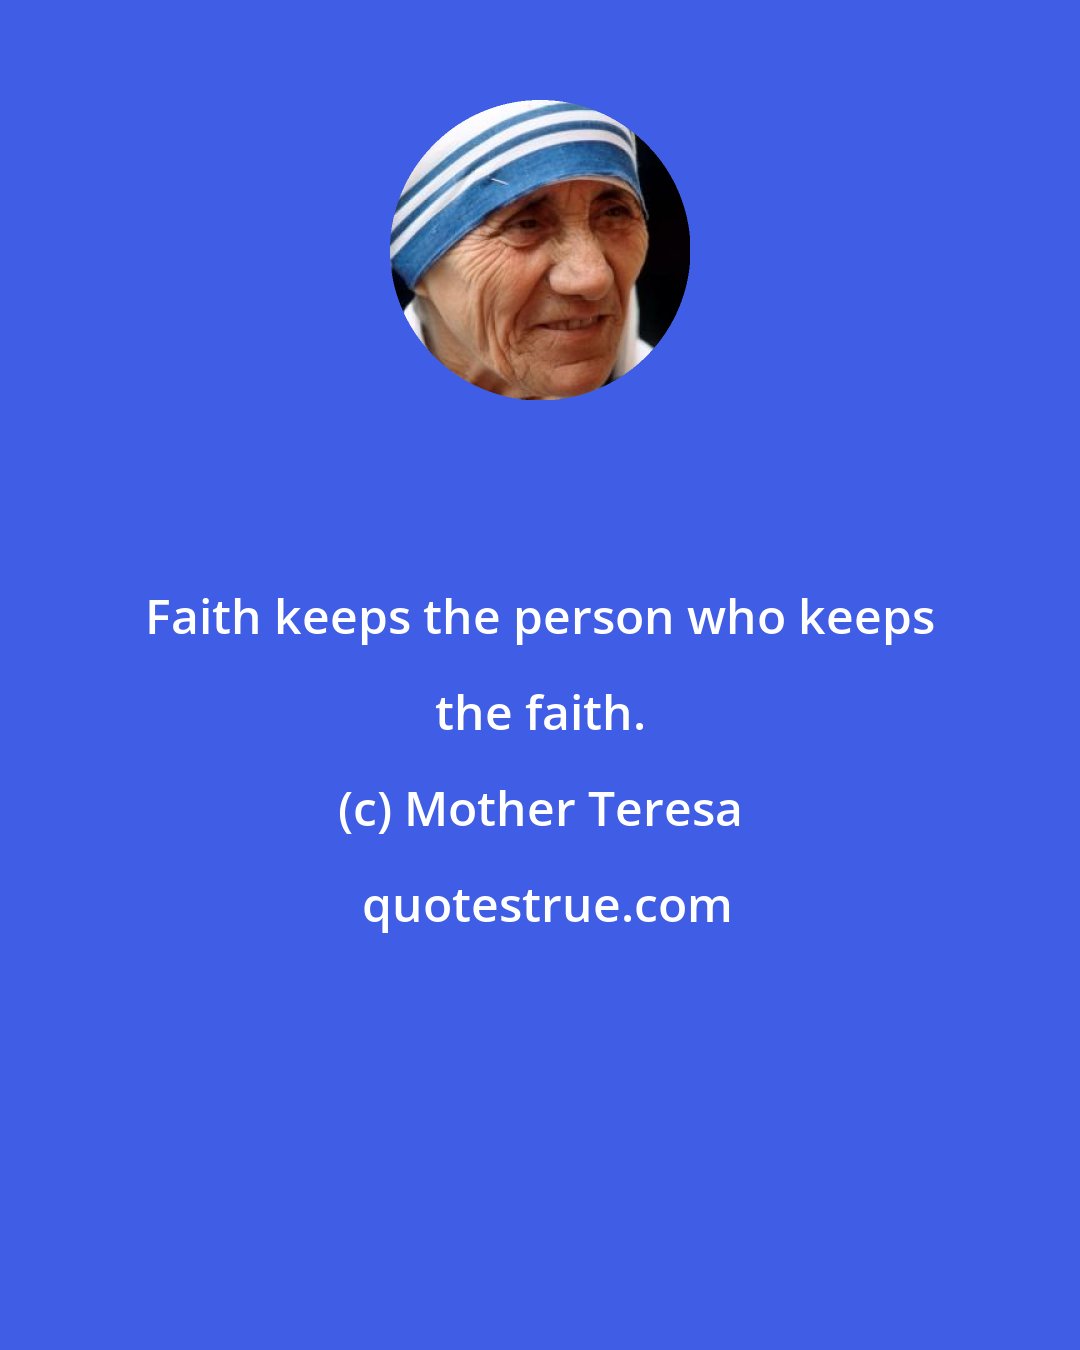 Mother Teresa: Faith keeps the person who keeps the faith.